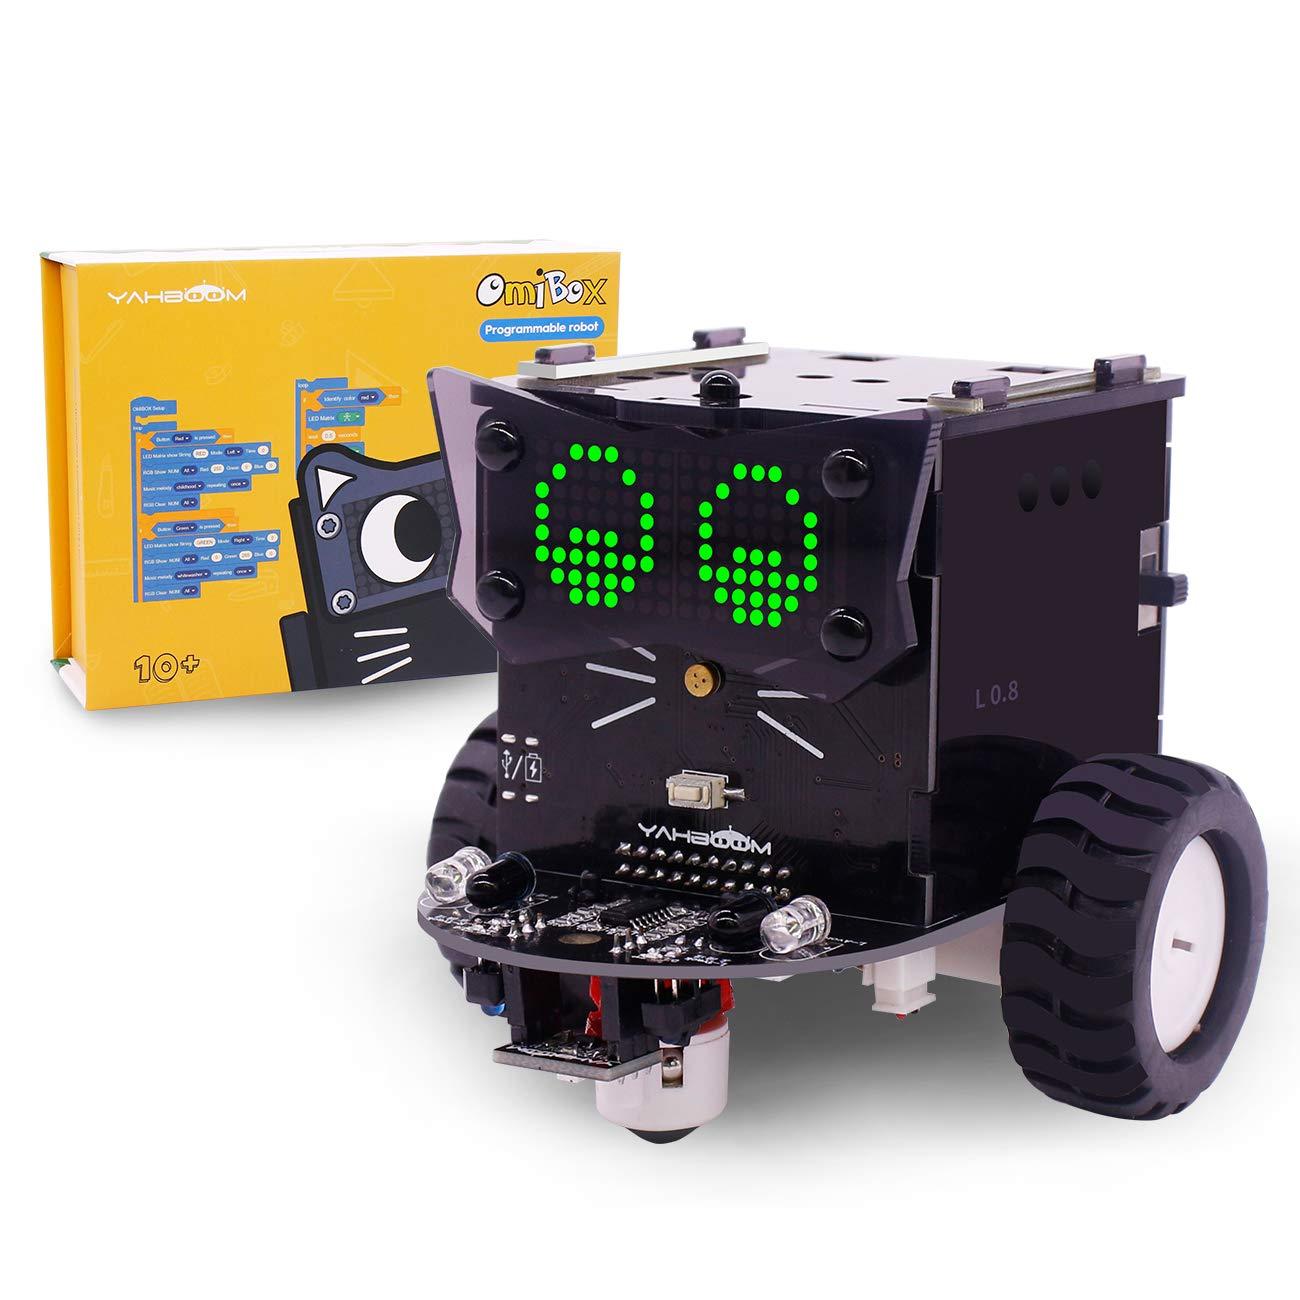 

Программируемый робот Yahboom Omibox Набор для детей на базе Scratch 3.0 для STEAM Education DIY Игрушка Авто с обучающе